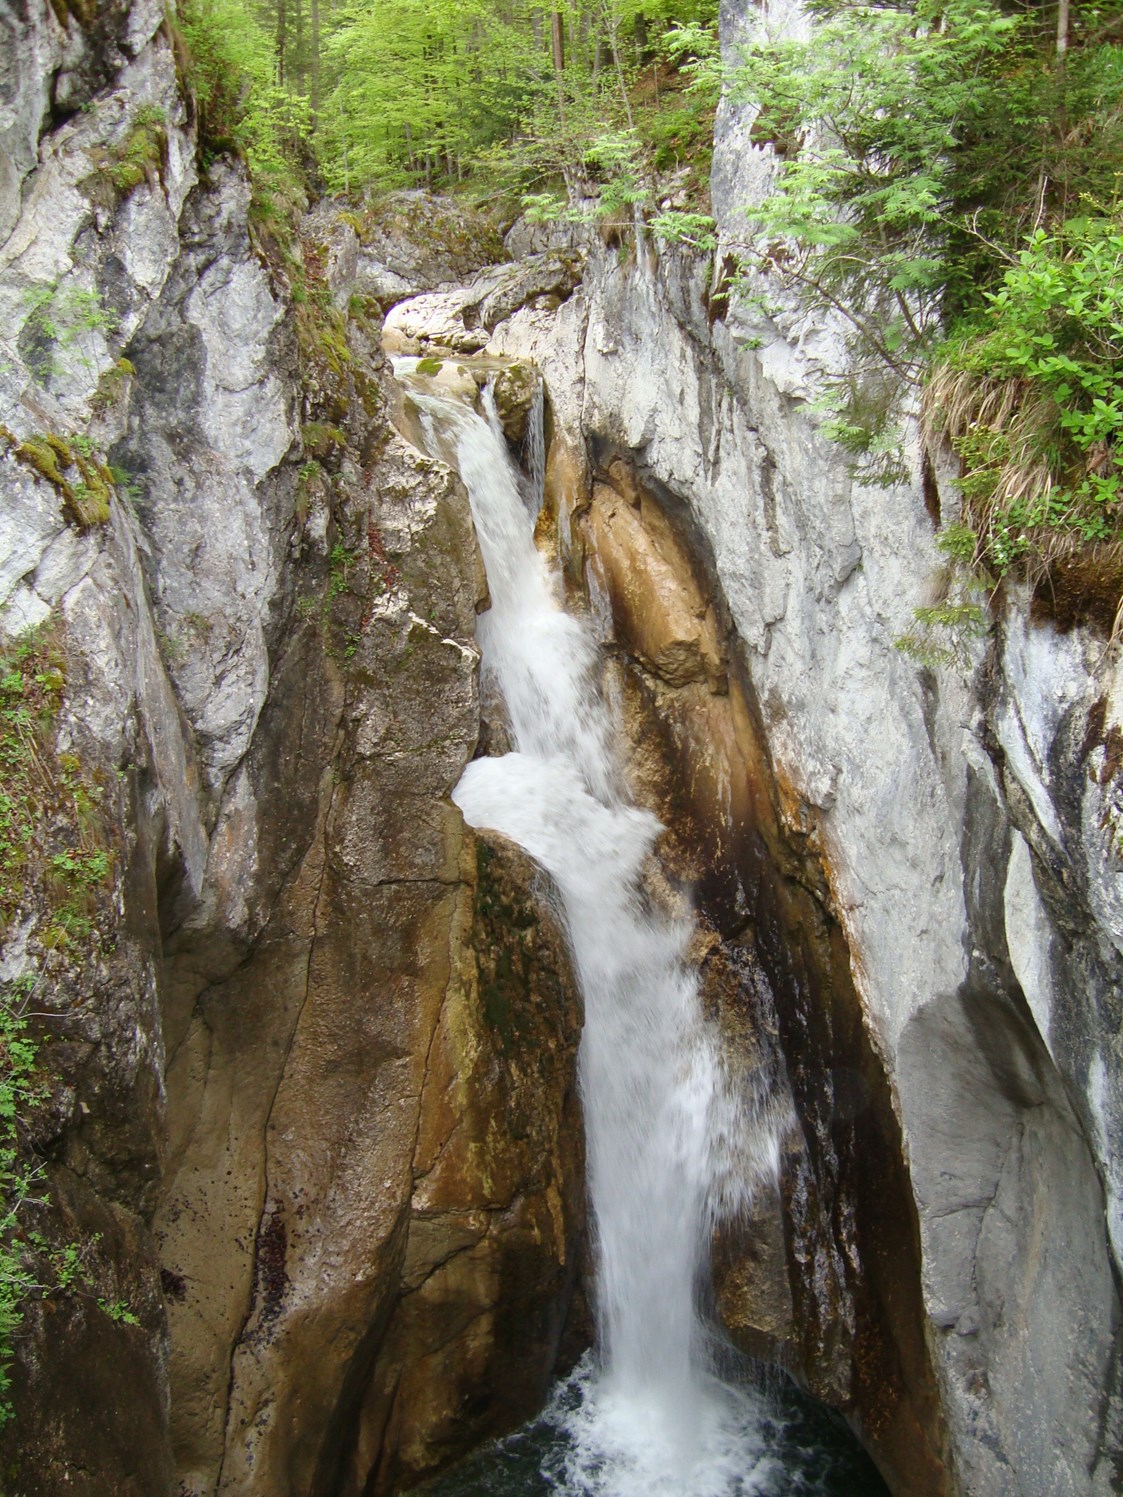 Hochzeitslocation: Tatzlwurm Wasserfall - Feuriger Tatzlwurm